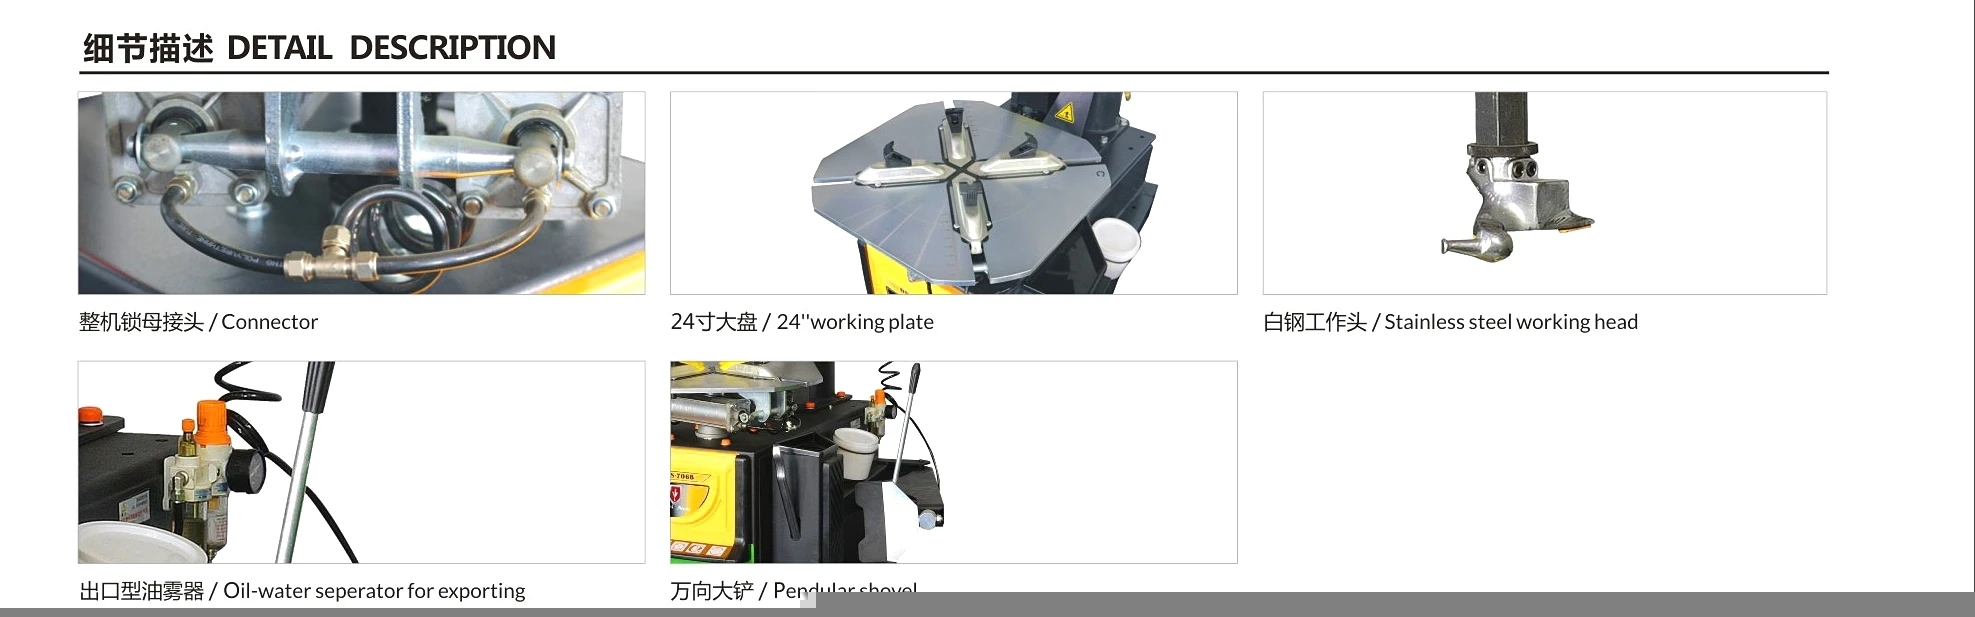 Garage repair equipment/China Factory/tyre changer DS-706B